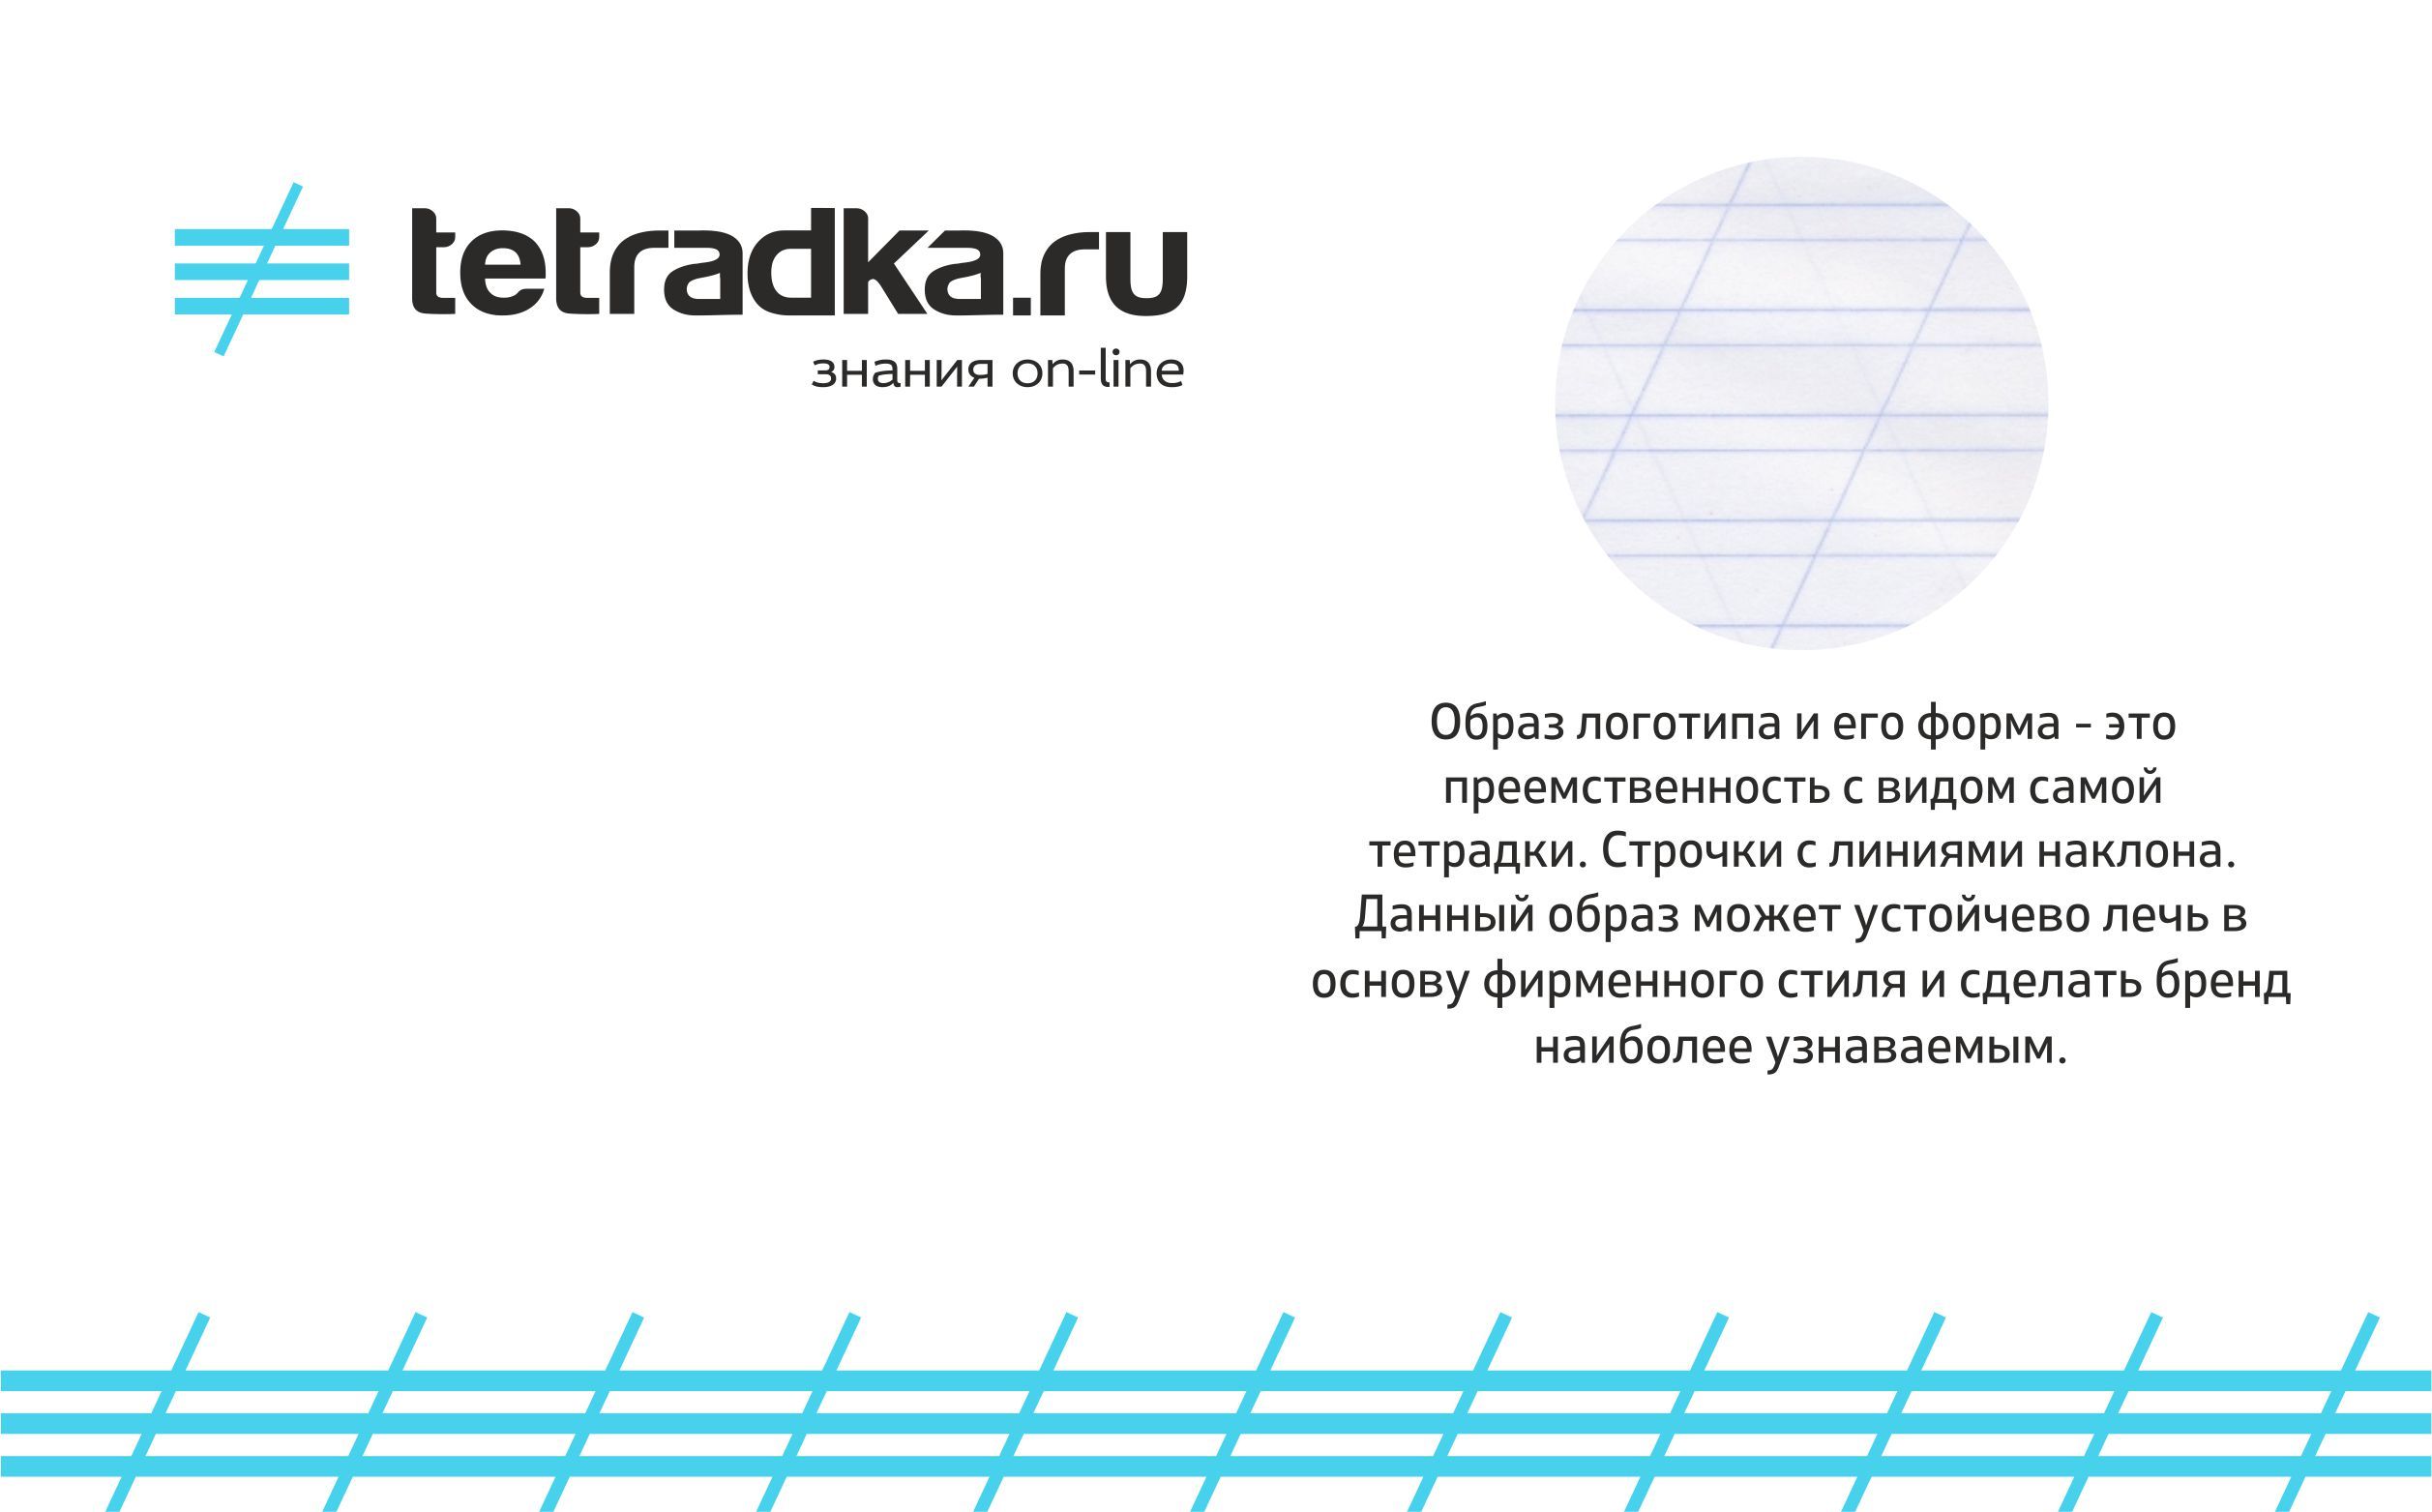 Логотип для образовательной сети tetradka.ru - дизайнер Dirty_PR